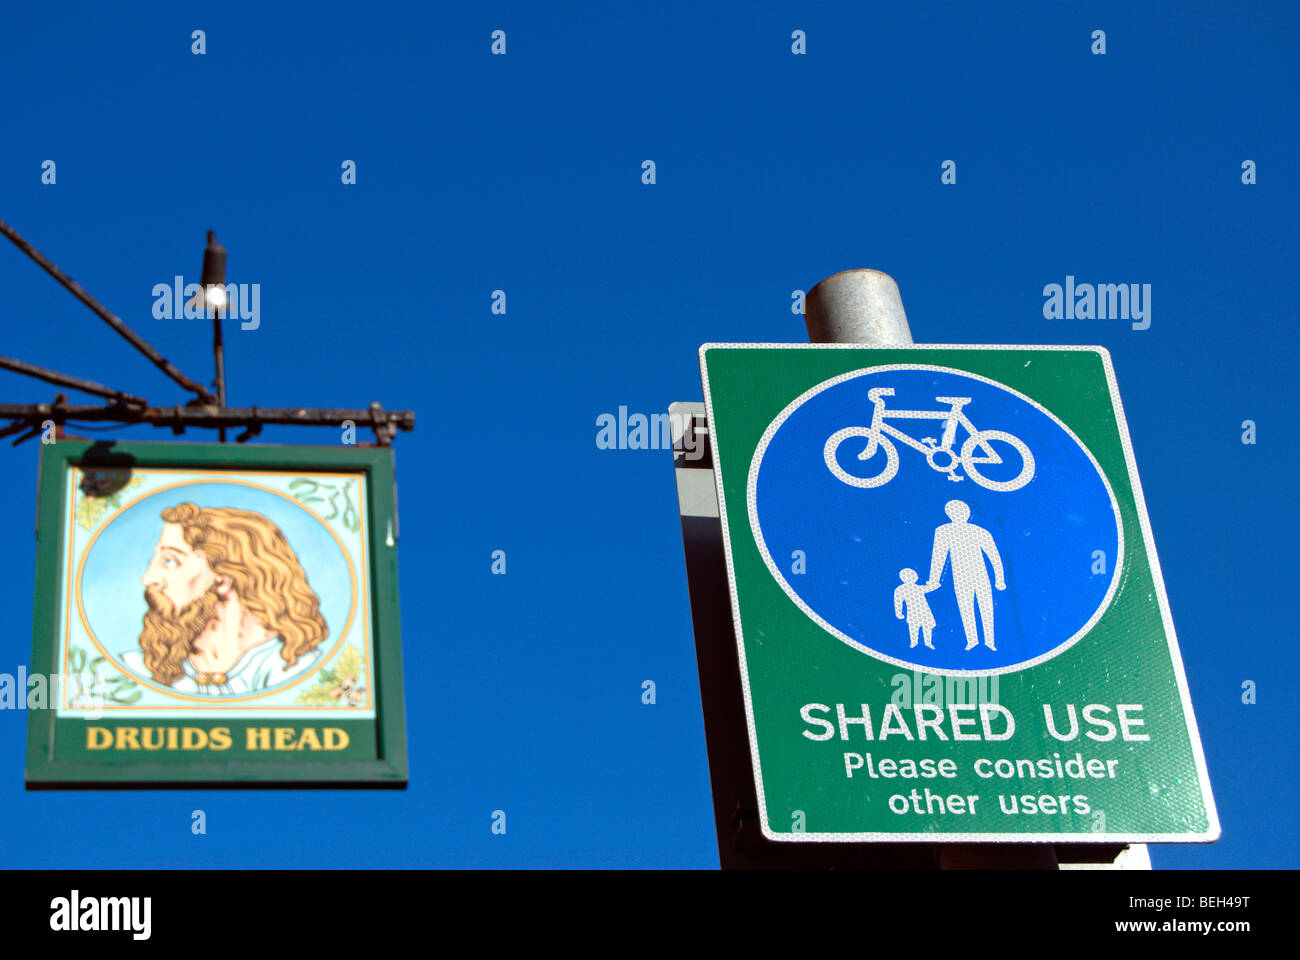 British uso condiviso cartello stradale, indicando un percorso utilizzato da pedoni e ciclisti, adiacente ad una locanda in un segno per i druidi testa Foto Stock